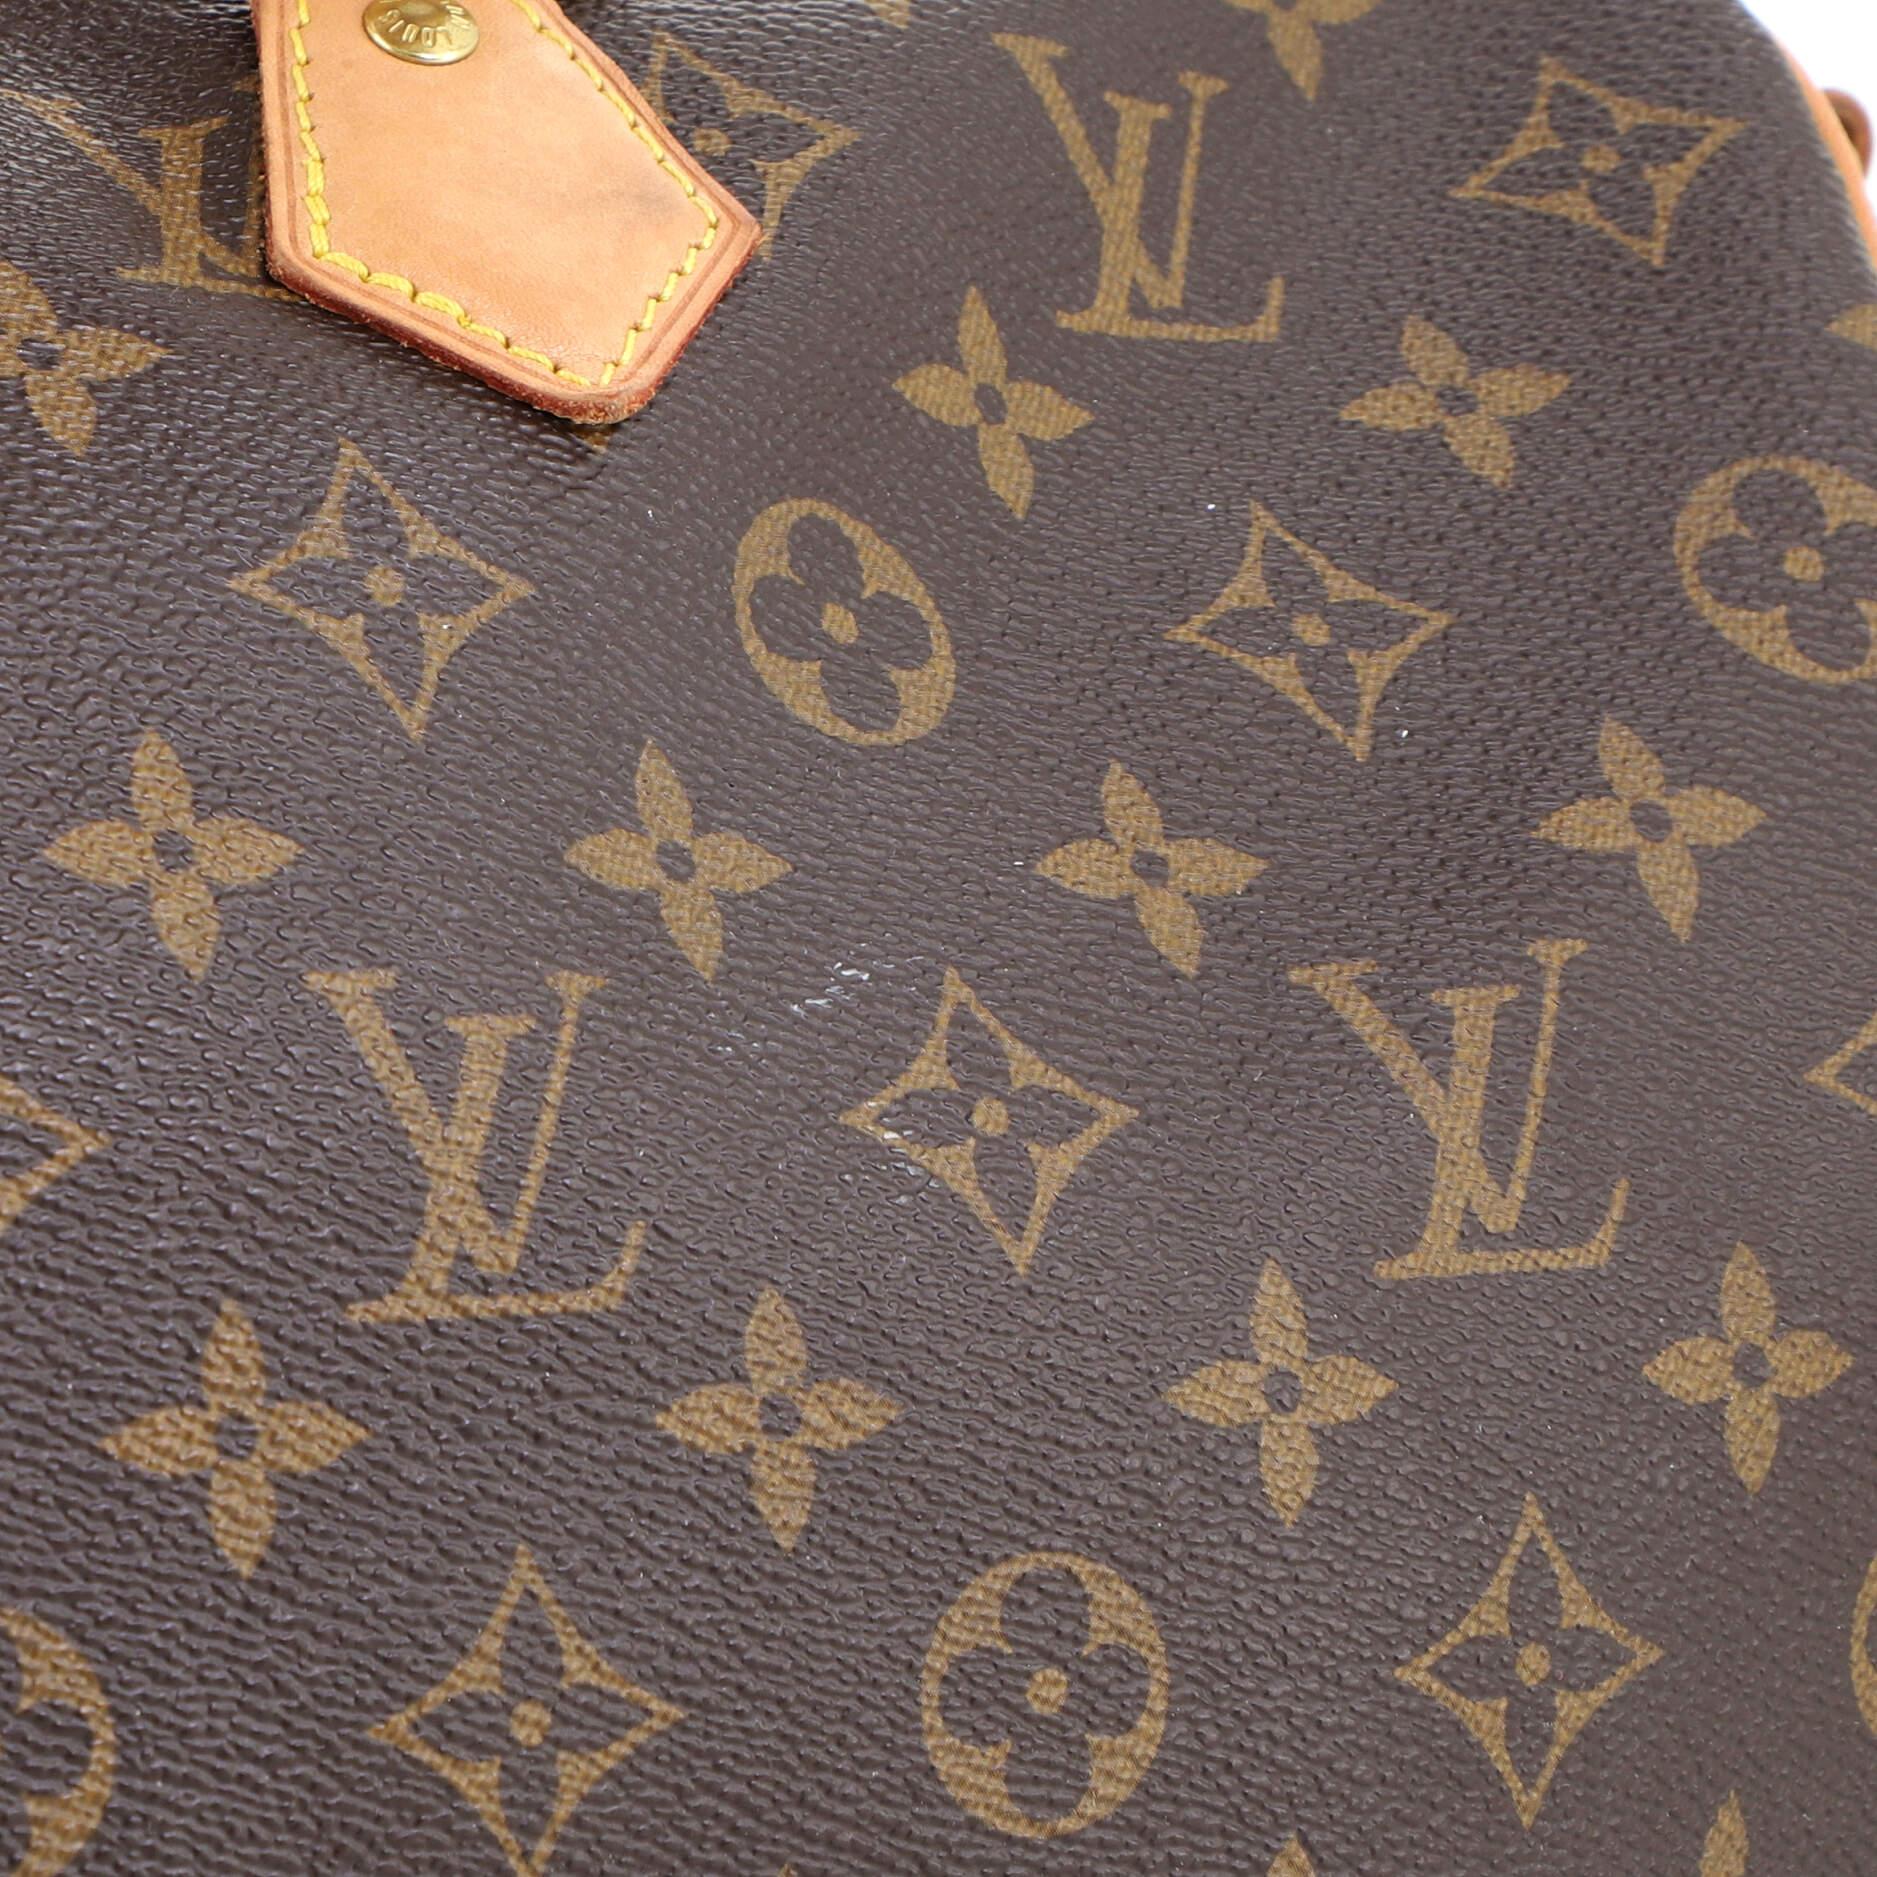 Women's or Men's Louis Vuitton Speedy Bandouliere Bag Monogram Canvas 35